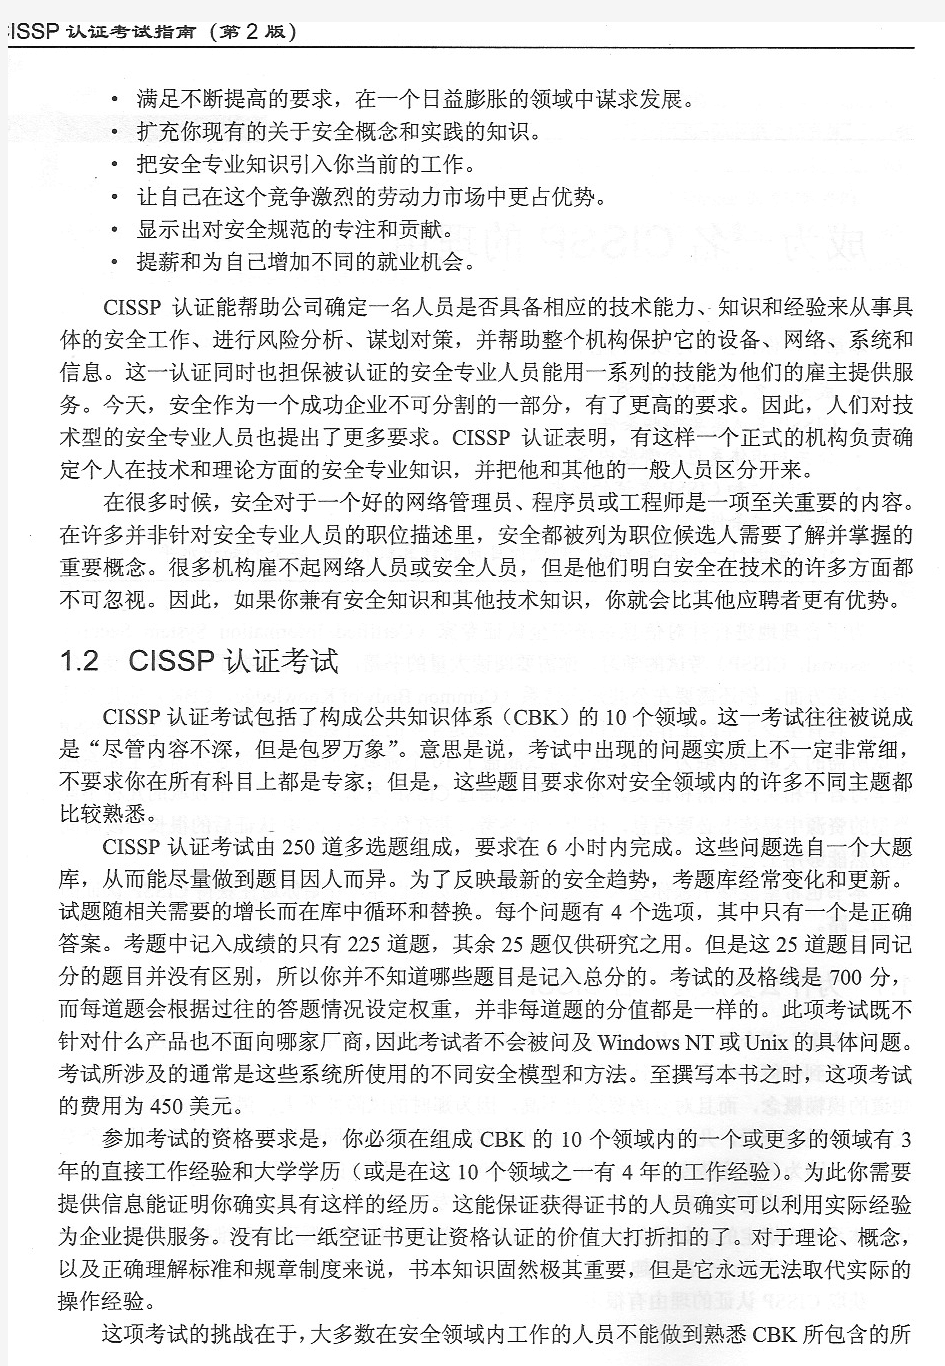 CISSP认证考试指南中文教程第一章